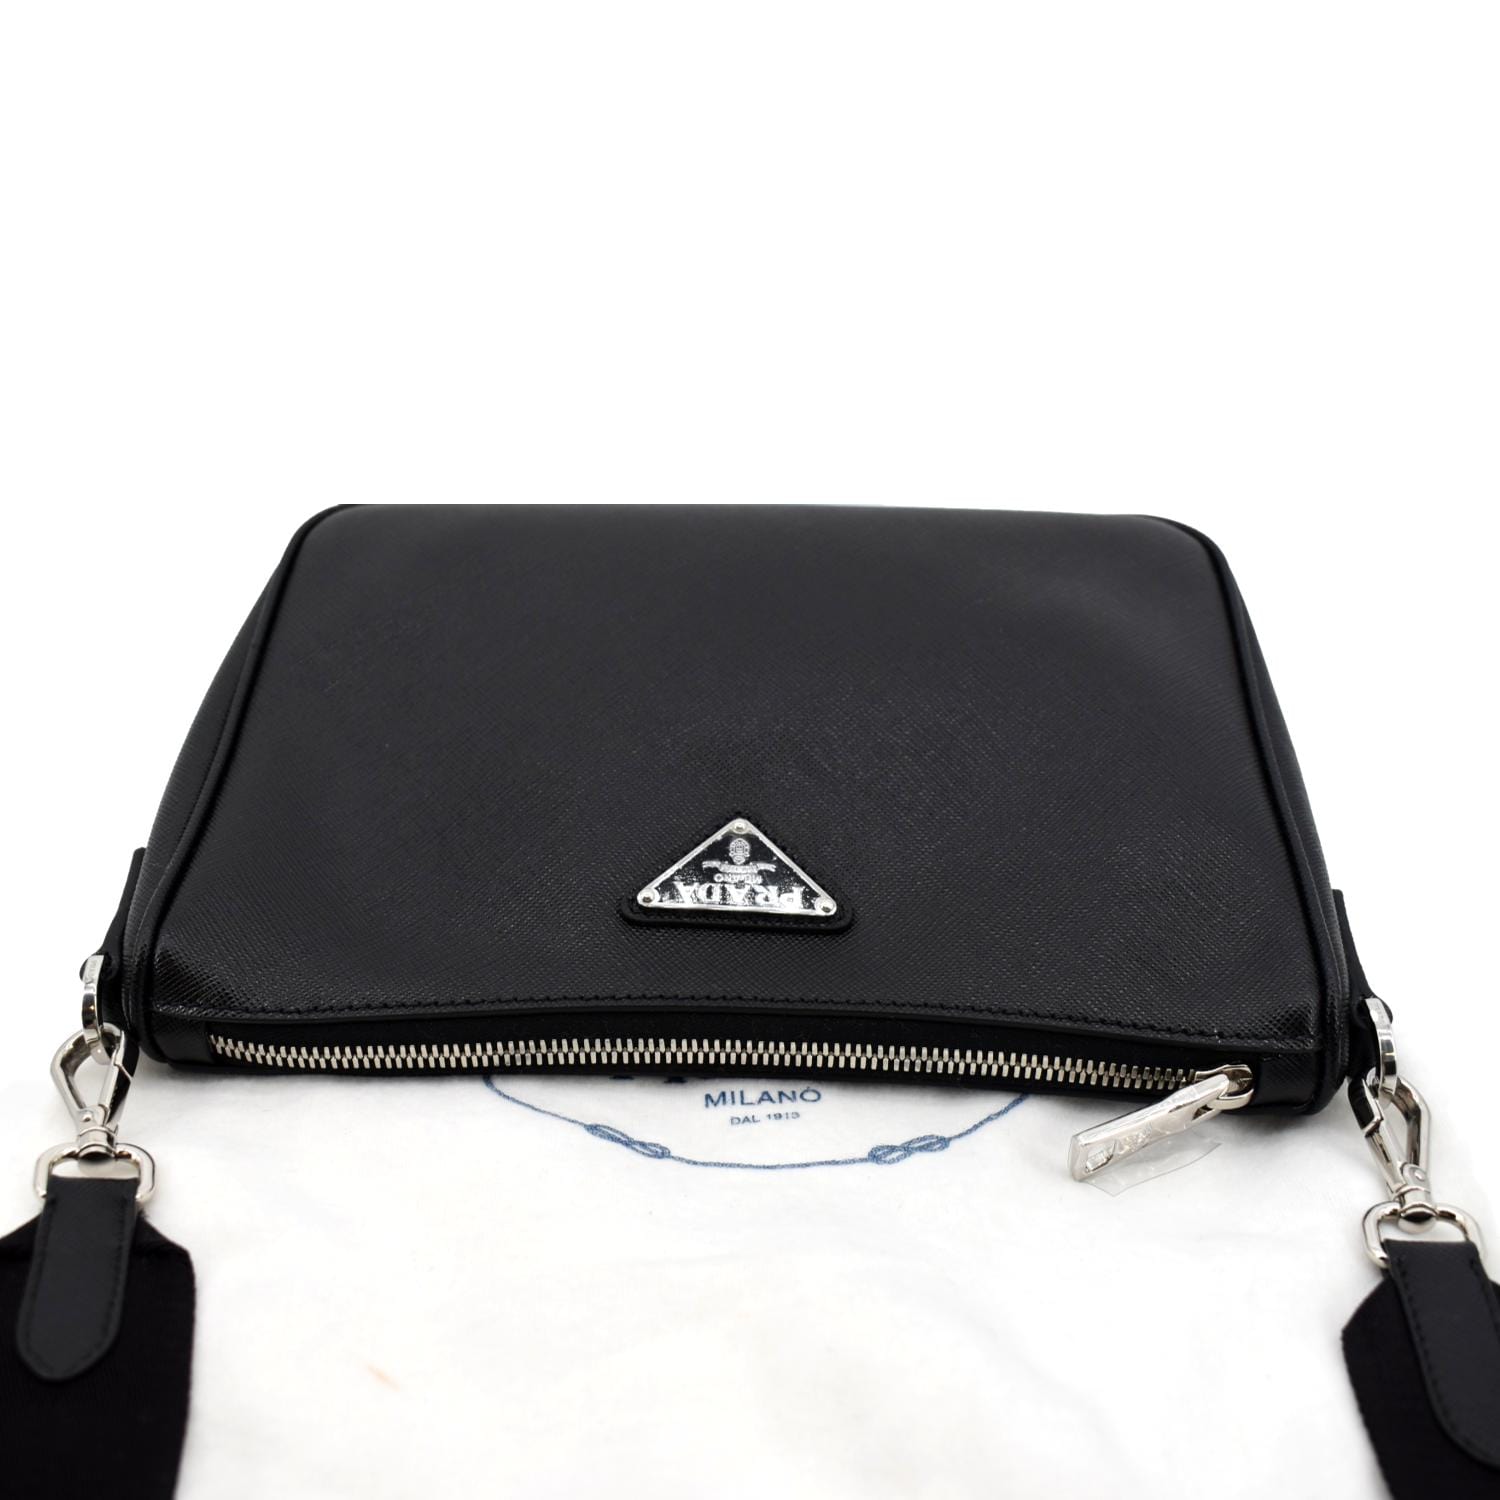 PRADA Shoulder Bag BR0449 one belt Nylon/leather black Women Used –